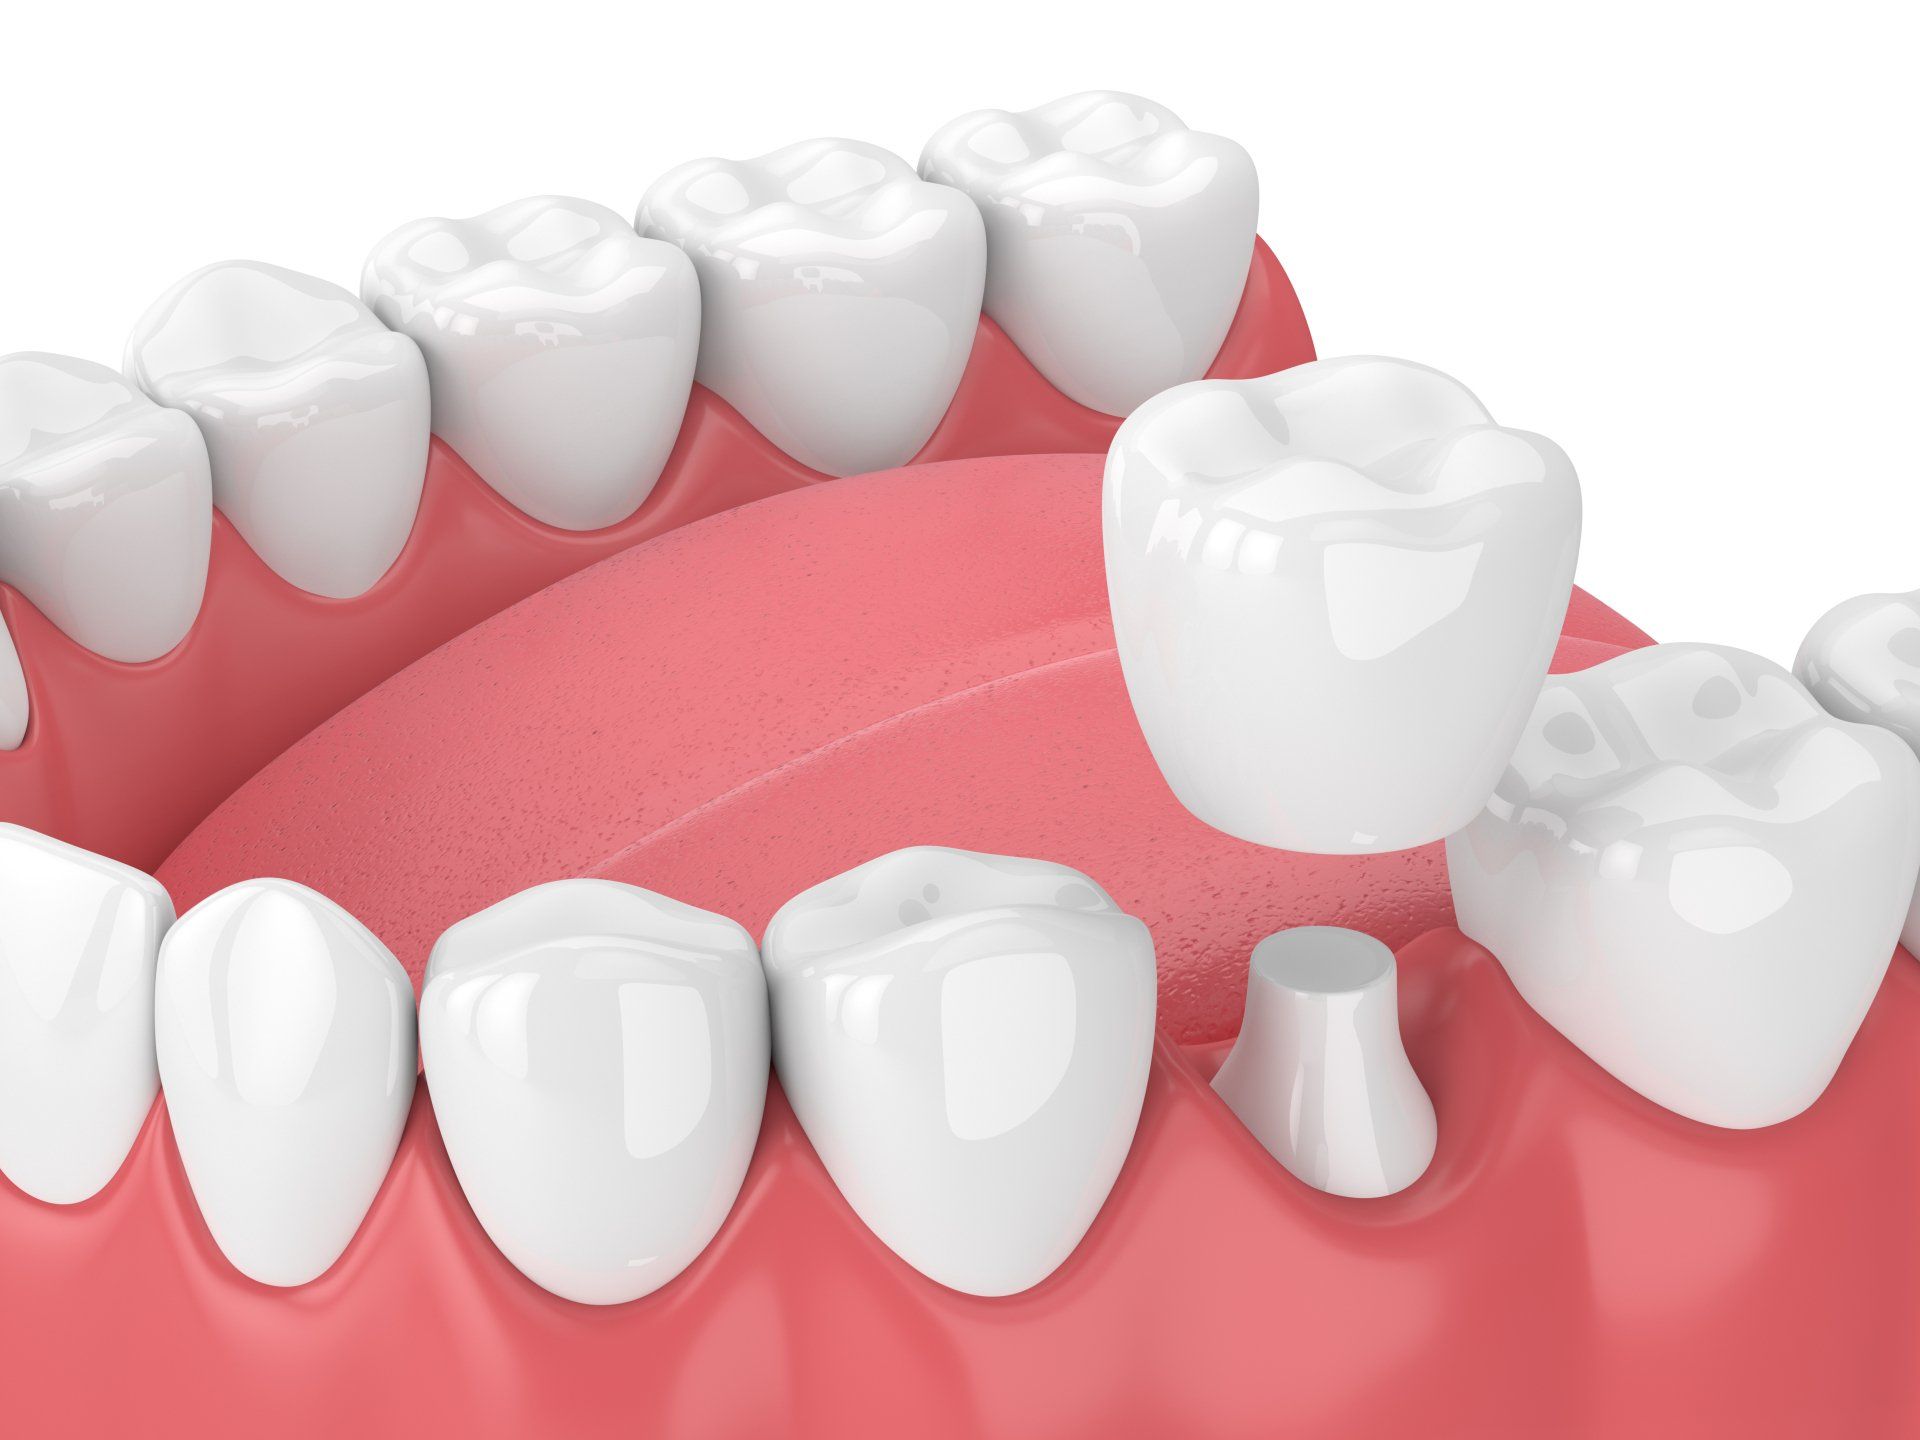 dental crown material